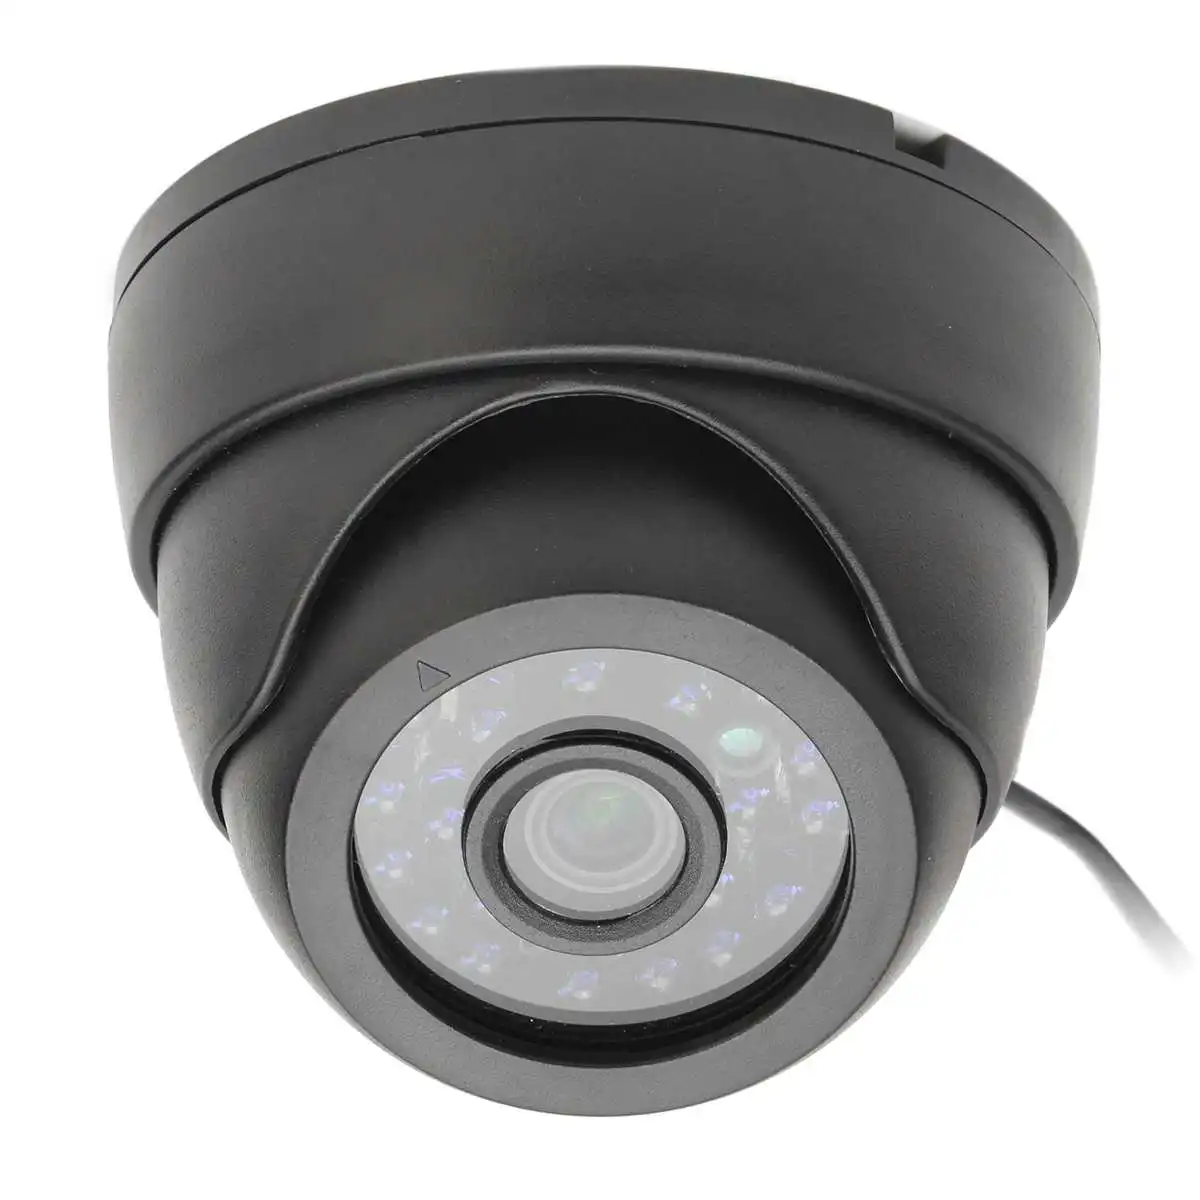 24 светодиодами и ИК-подсветкой дальностью действия Мини Черный 720 P 1.0MP IP Камера умный дом безопасности сети Крытый Ночное Видение